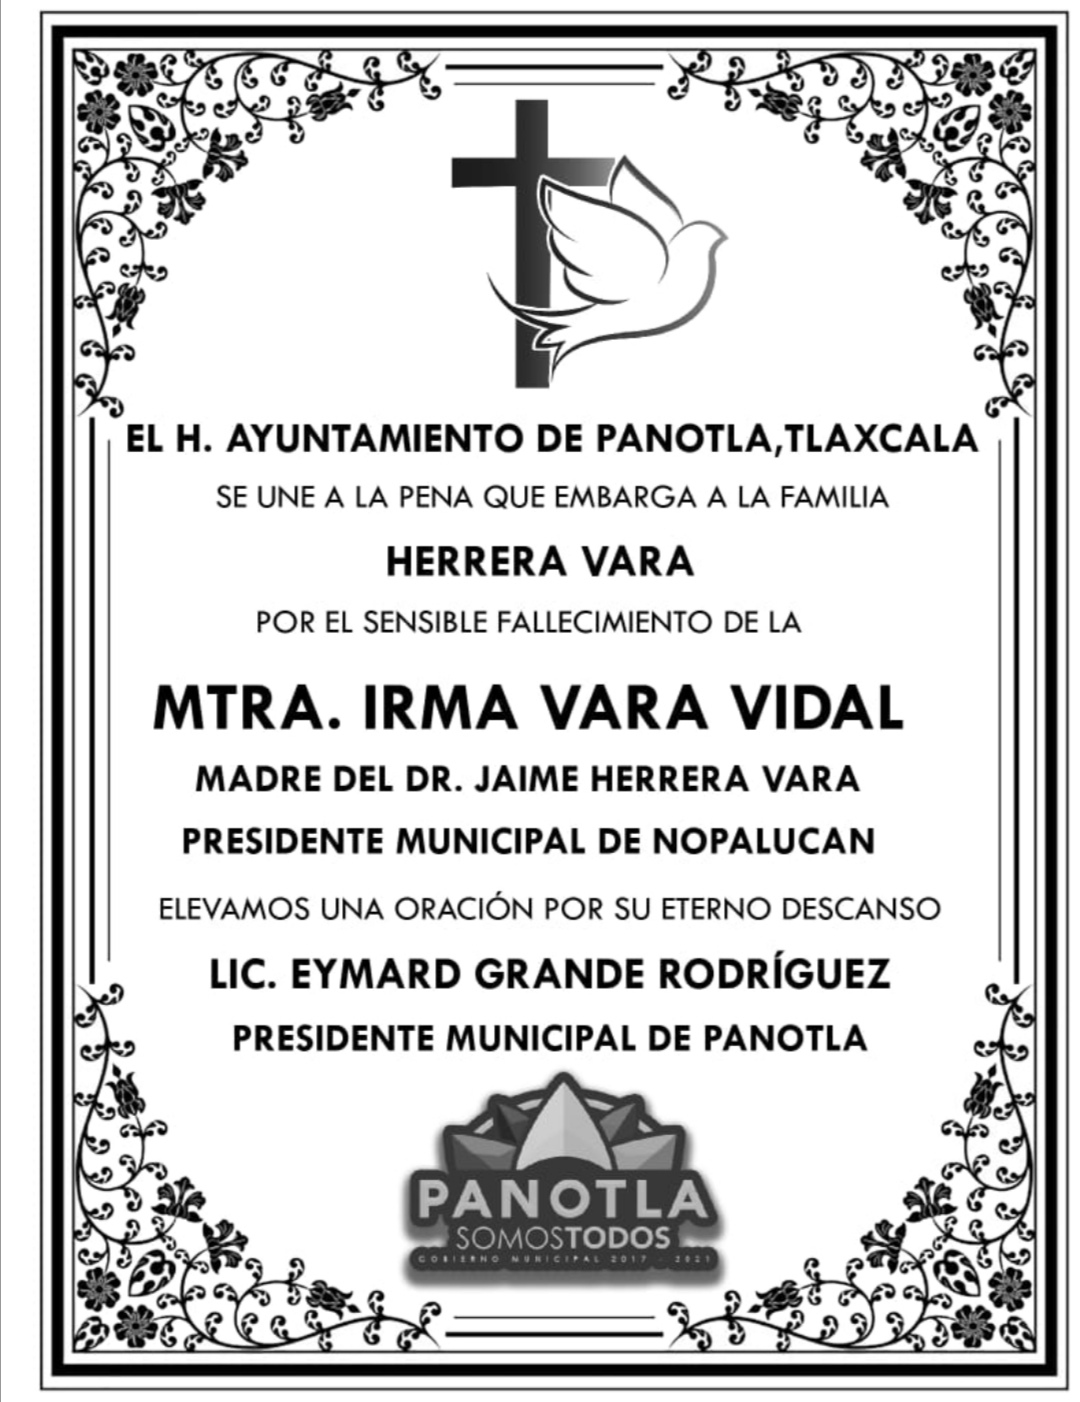 El Ayuntamiento de Panotla se une a la pena que embarga a la familia Herrera Vara.